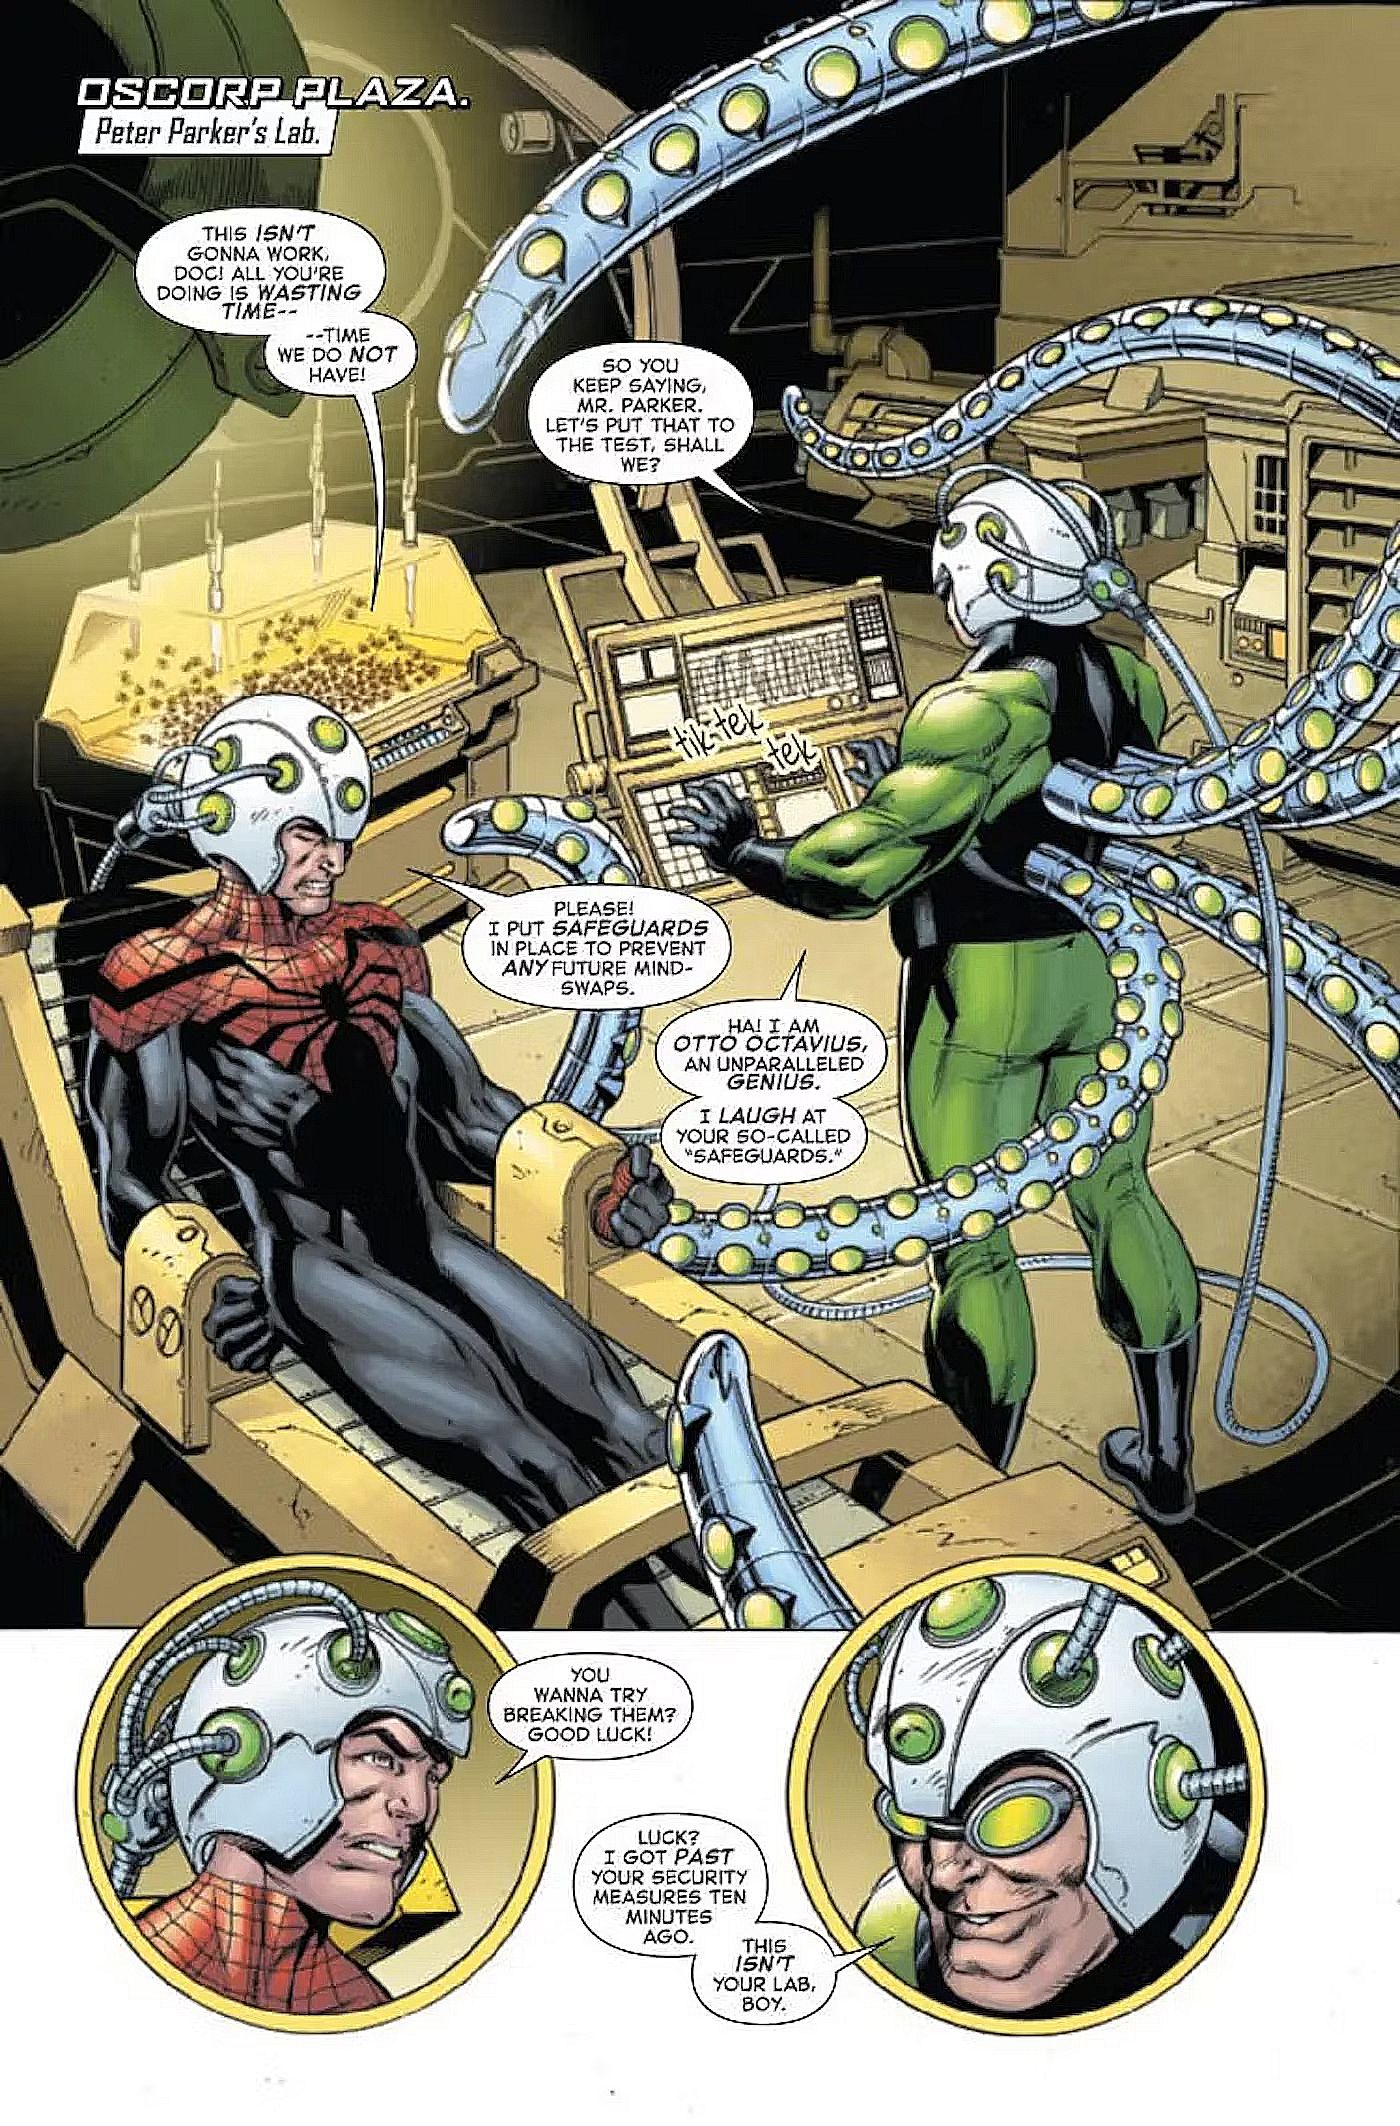 Spider-Man Unggul #4, Doc Ock mencoba mencuri tubuh Peter Parker...lagi